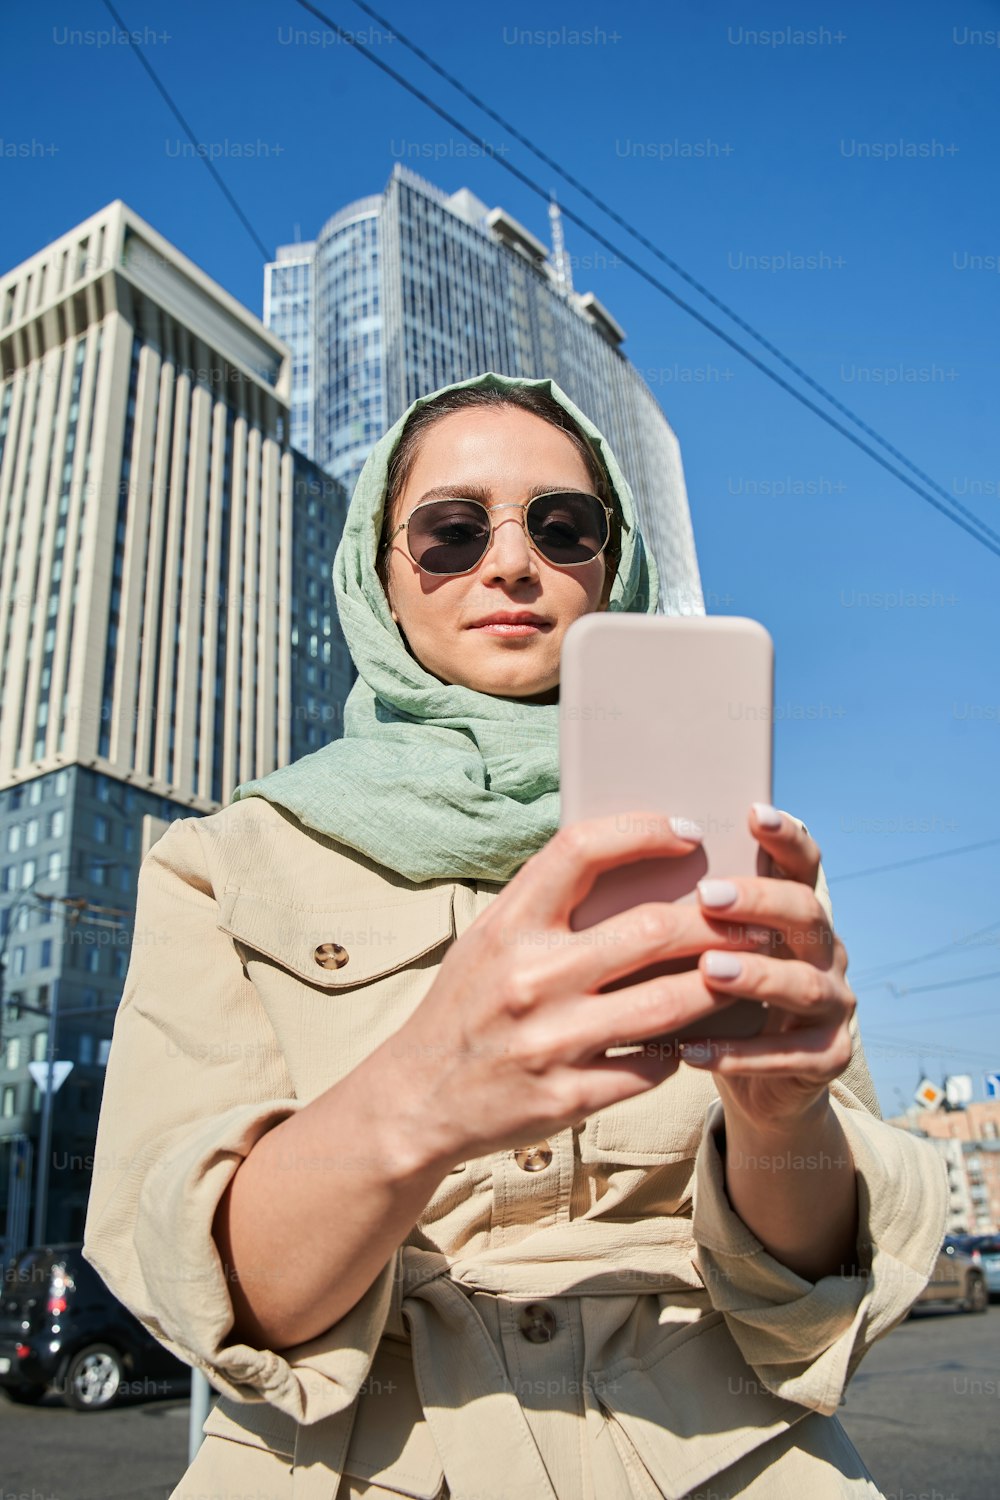 高い建物を背景にスマートフォンで自分撮りをする豪華なイスラム教徒の女の子のローアングルビュー。旅の間にカメラに向かってポーズをとる興奮した楽しい女性